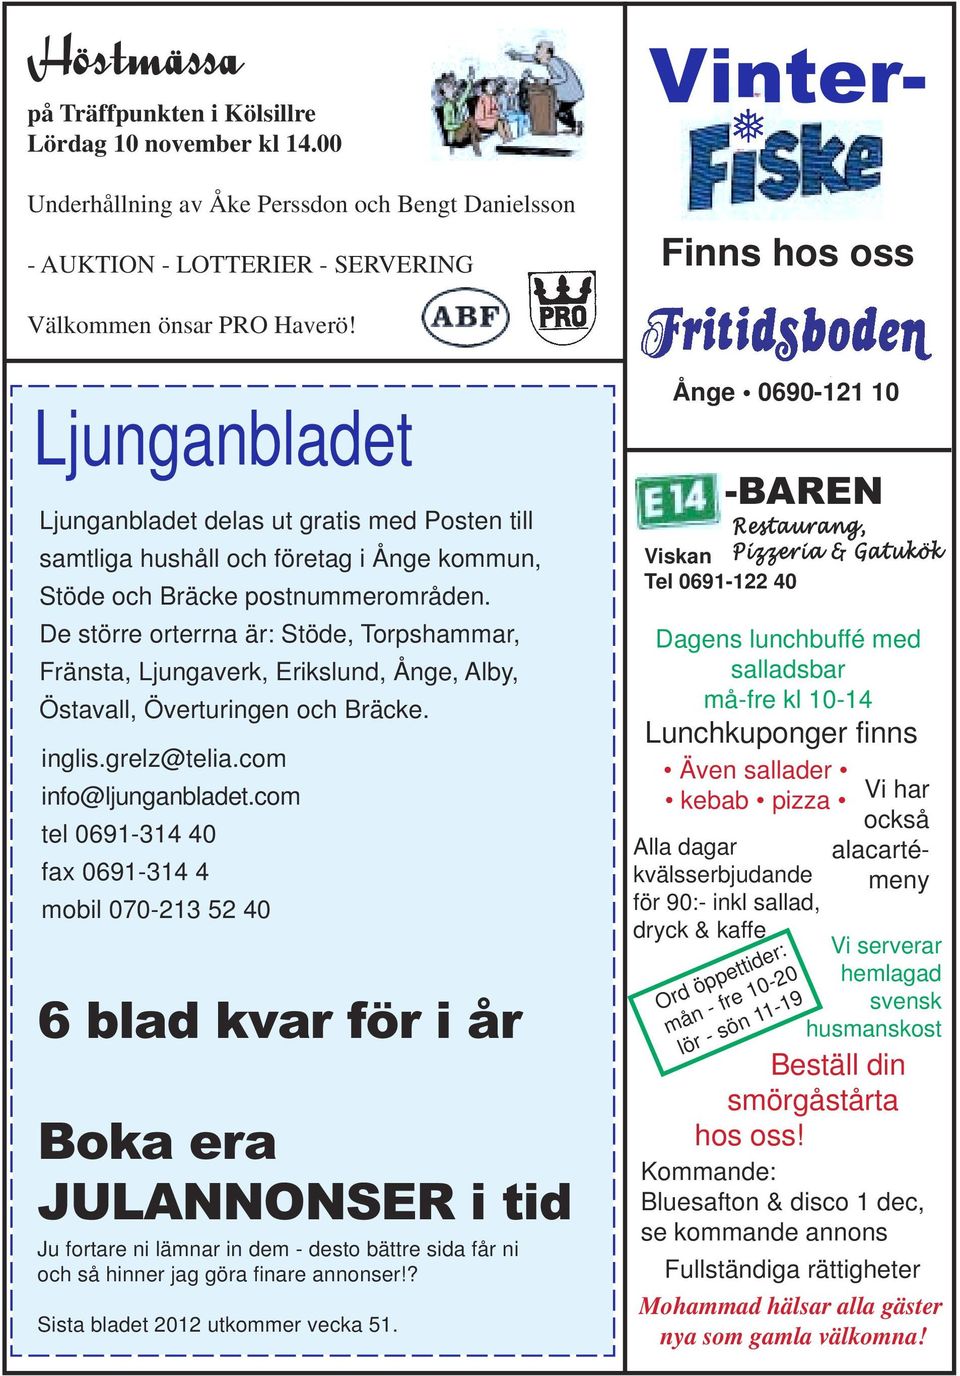 Ljunganbladet Ljunganbladet delas ut gratis med Posten till samtliga hushåll och företag i Ånge kommun, Stöde och Bräcke postnummerområden.